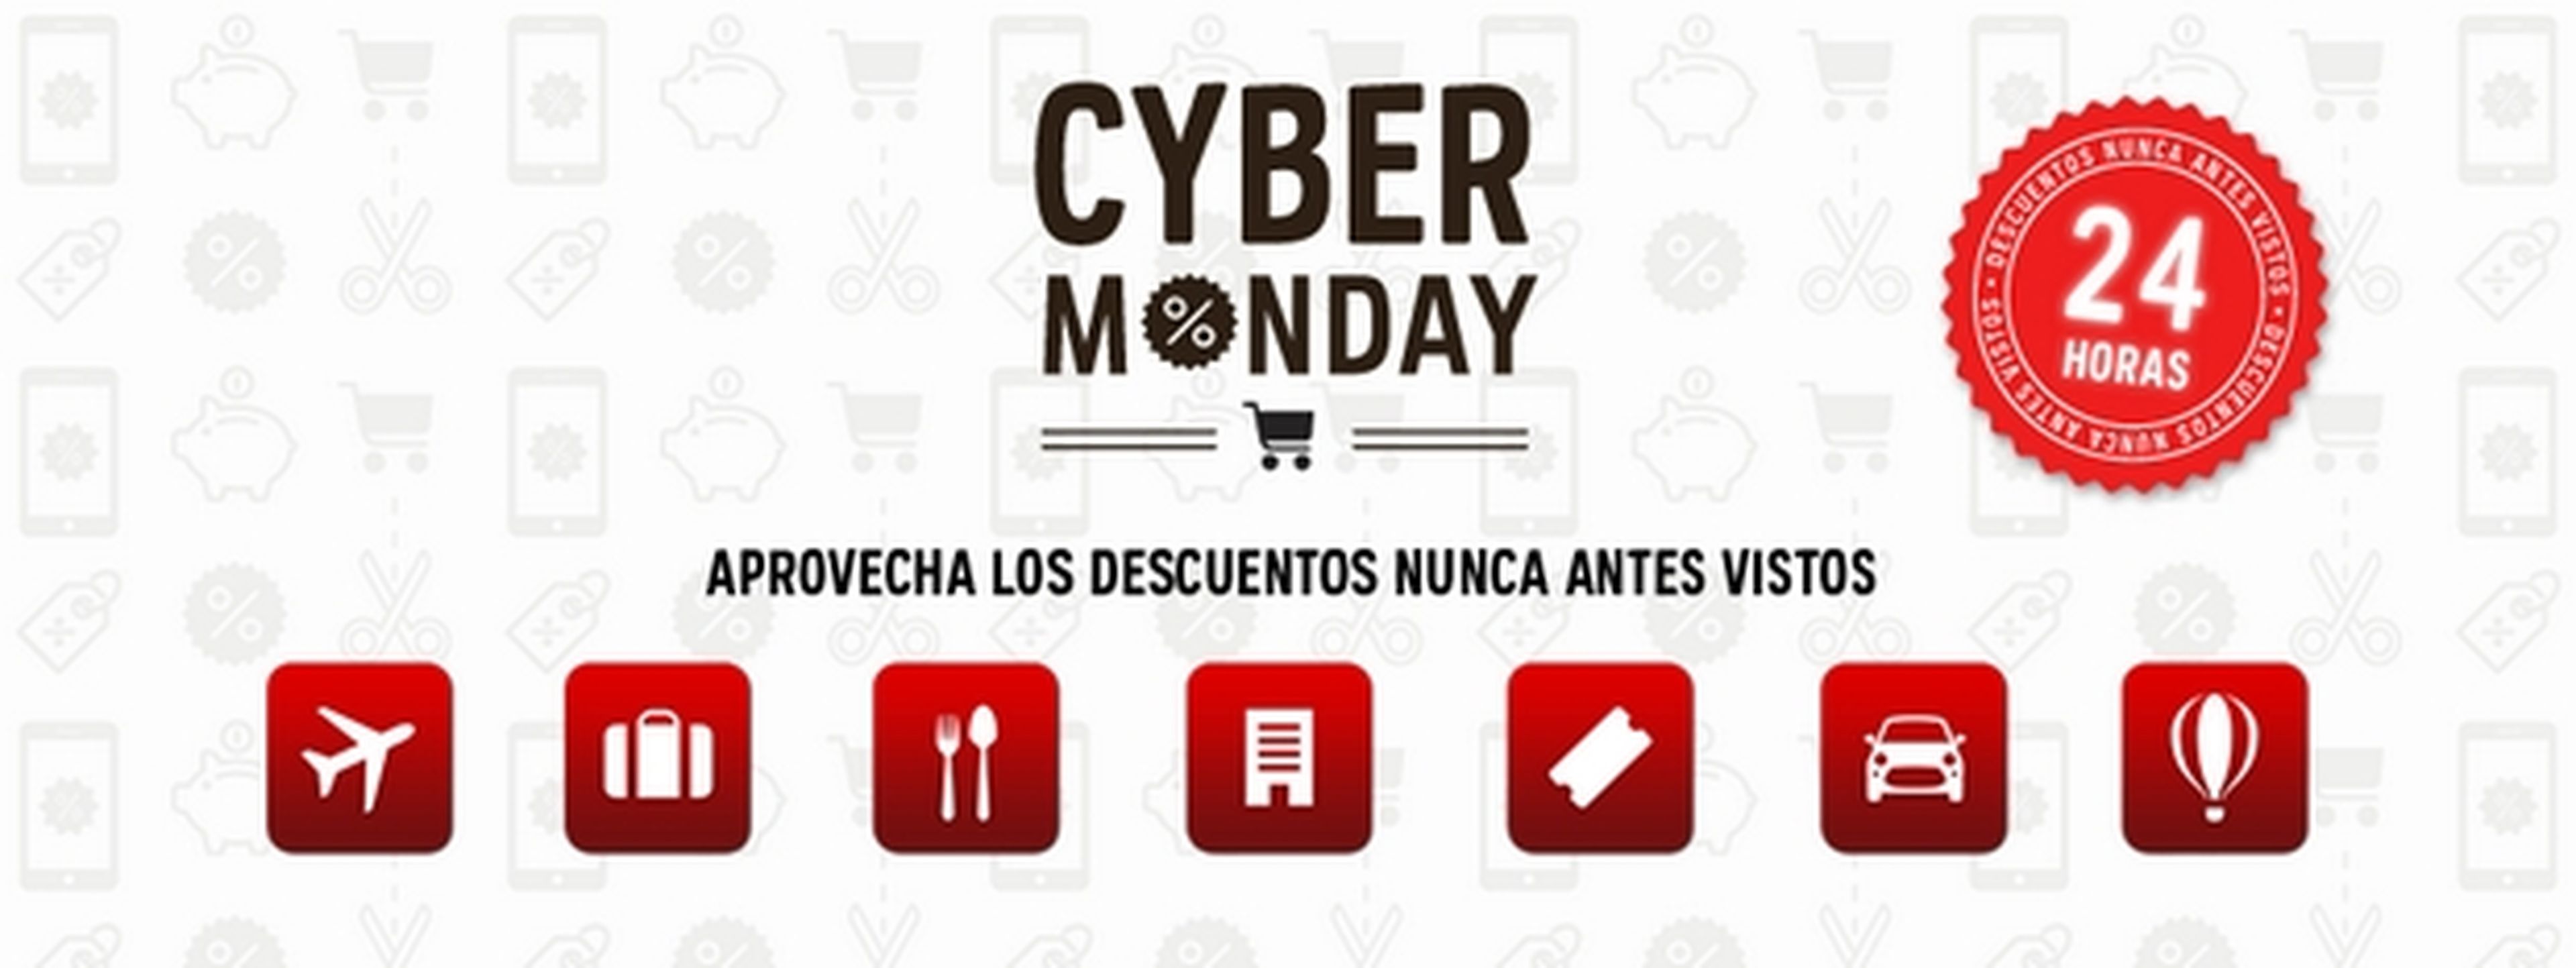 Cyber Monday 2015: todas las ofertas y descuentos de las tiendas